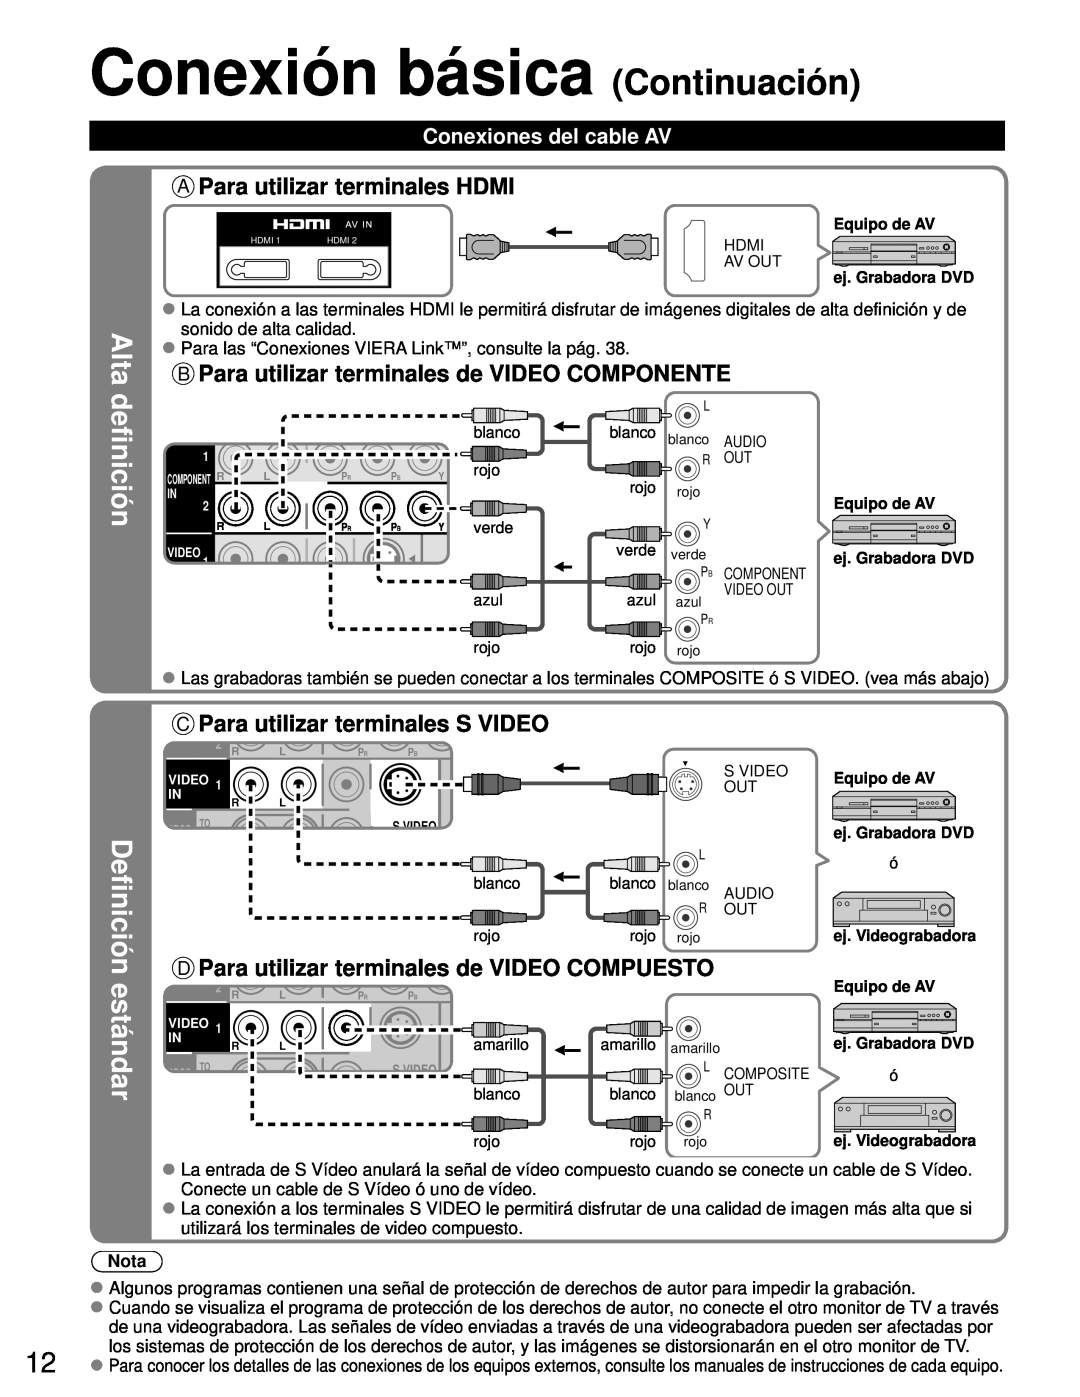 Panasonic TH-50PZ80U Alta, definición, estándar, A Para utilizar terminales HDMI, Definición, Conexiones del cable AV 